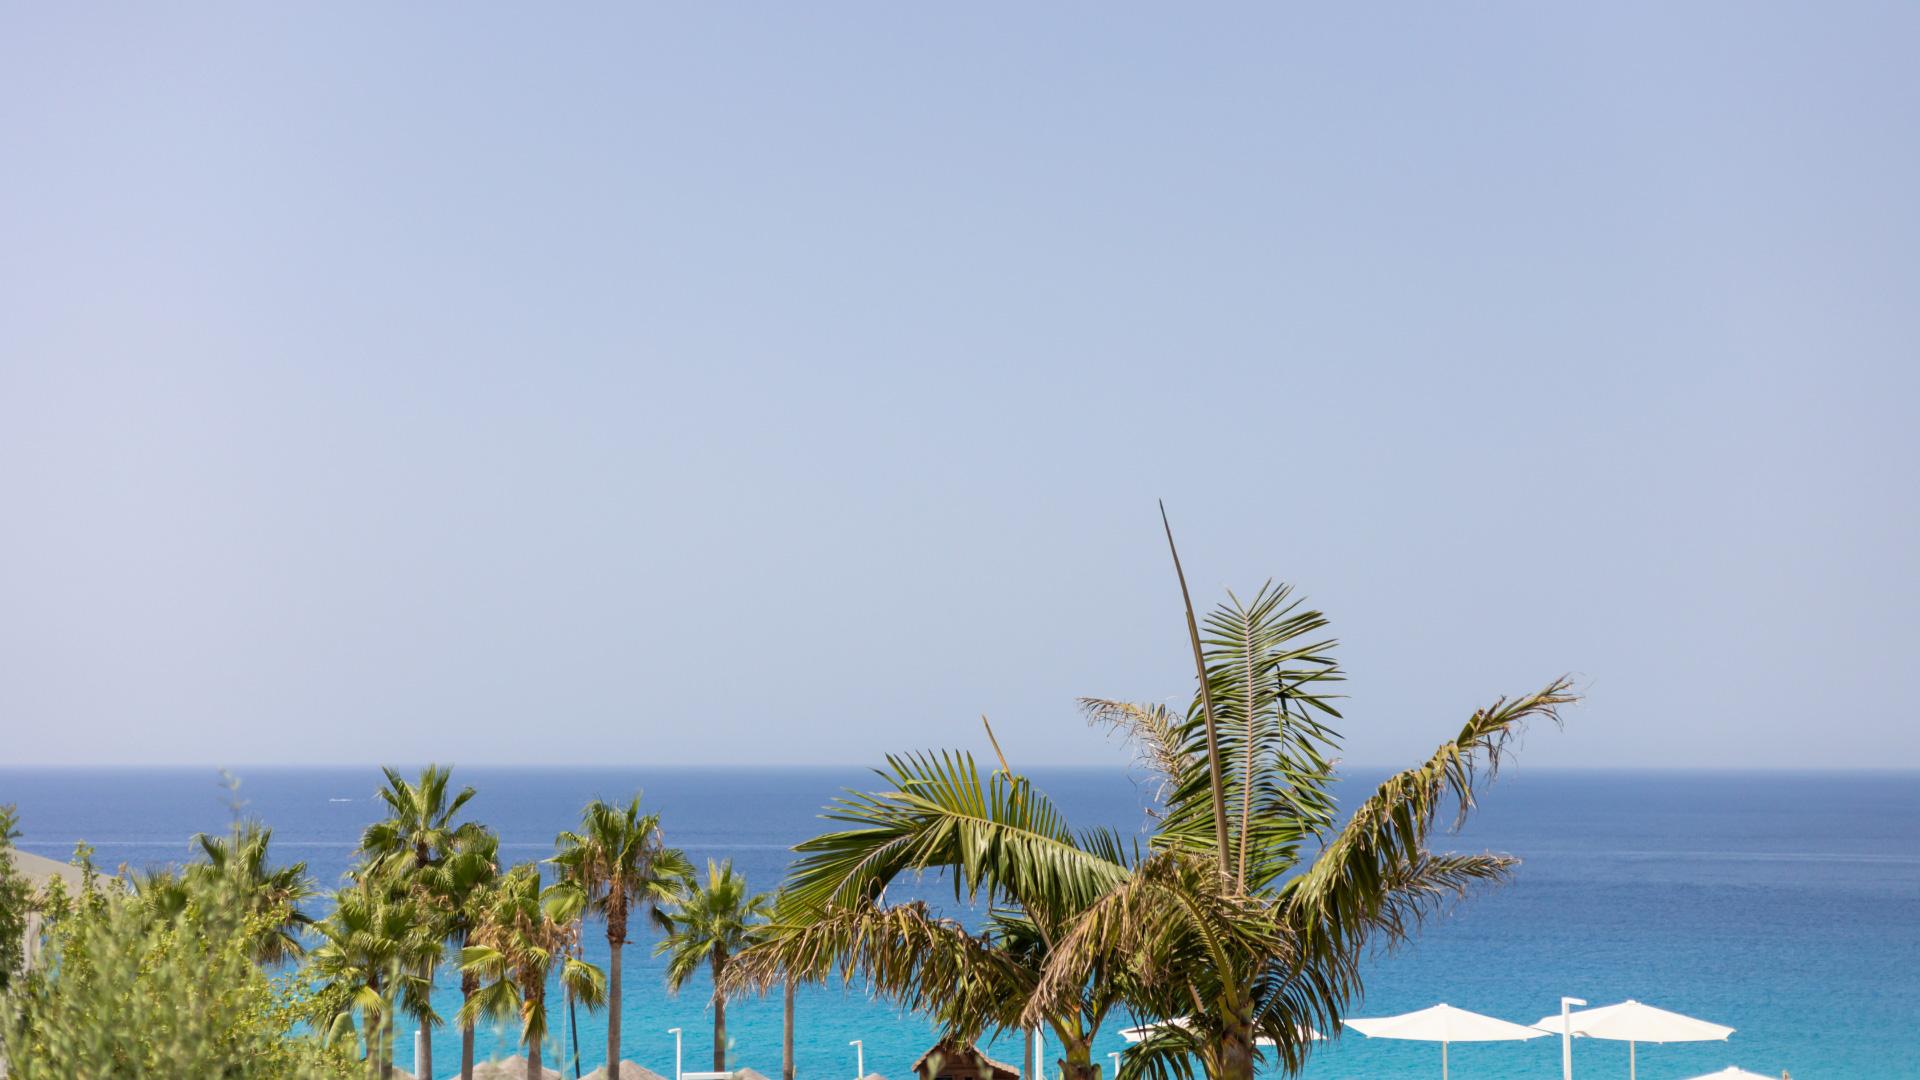 Palmen und weiße Sonnenschirme nahe dem blauen Meer unter klarem Himmel.